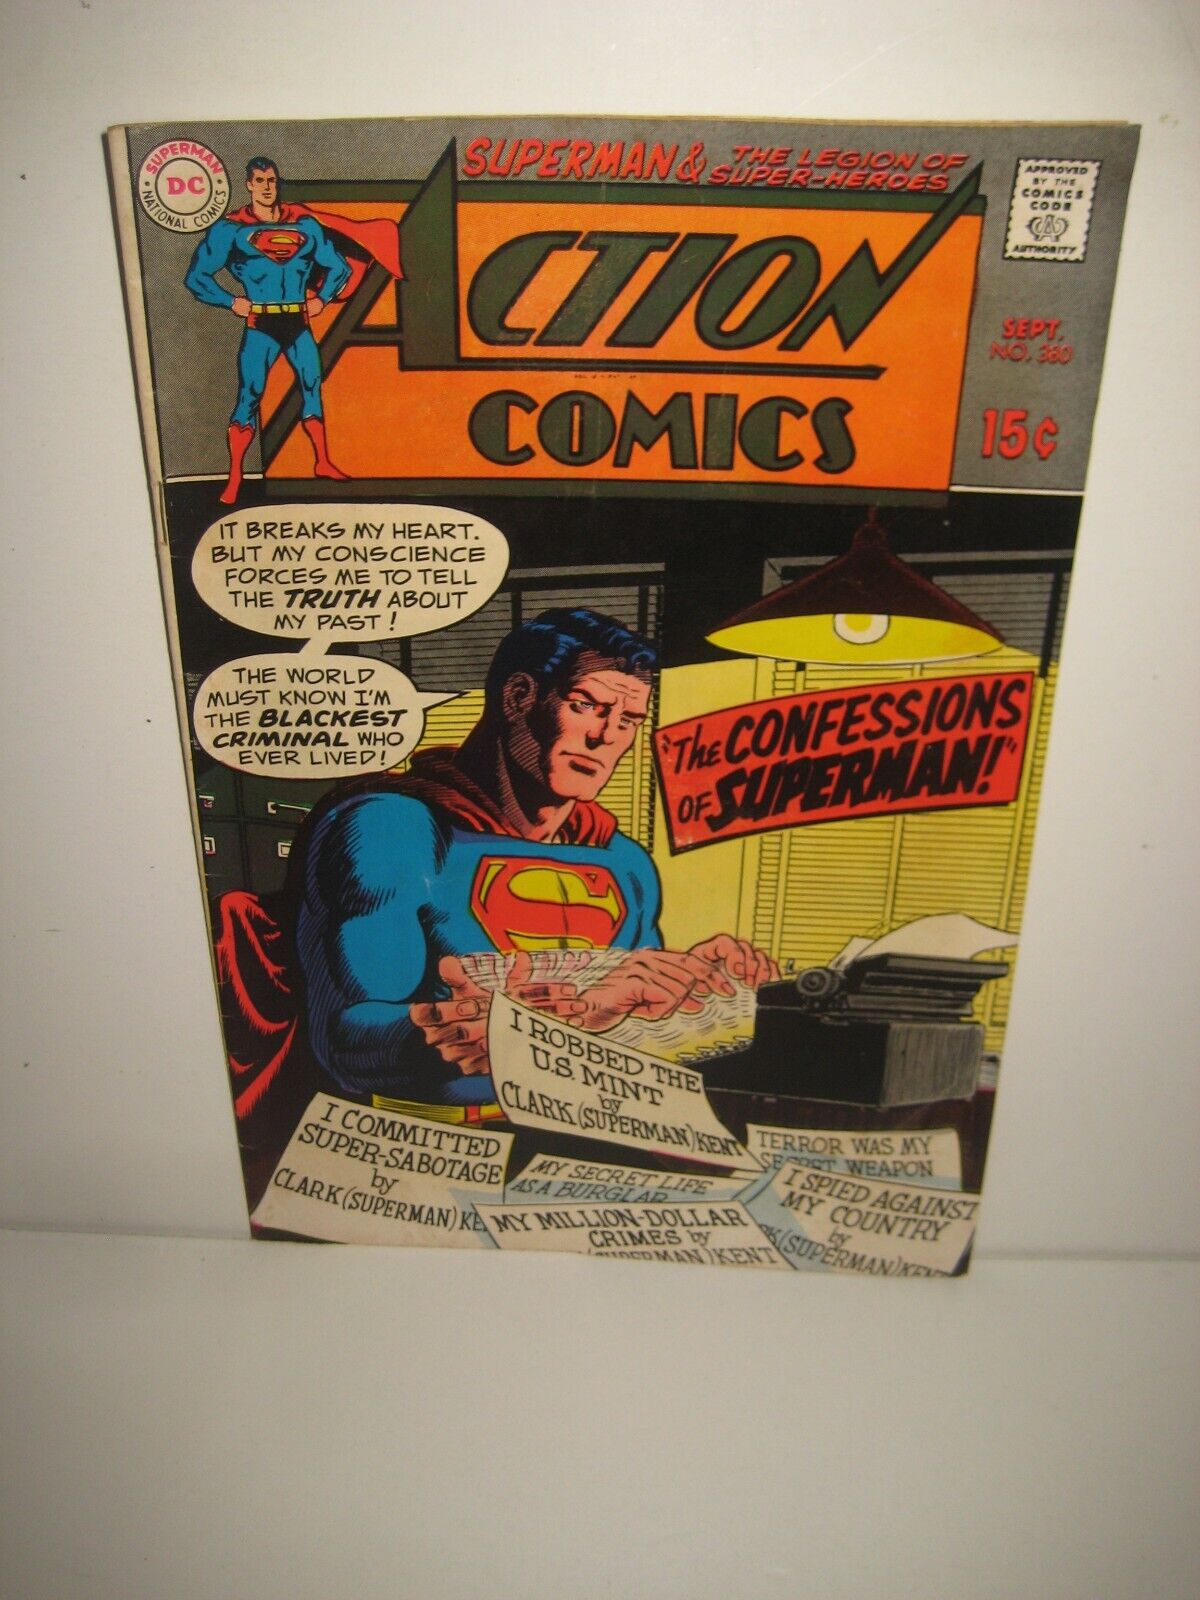 ACTION COMICS #380 "Confessions of Superman" 1969 DC Comics